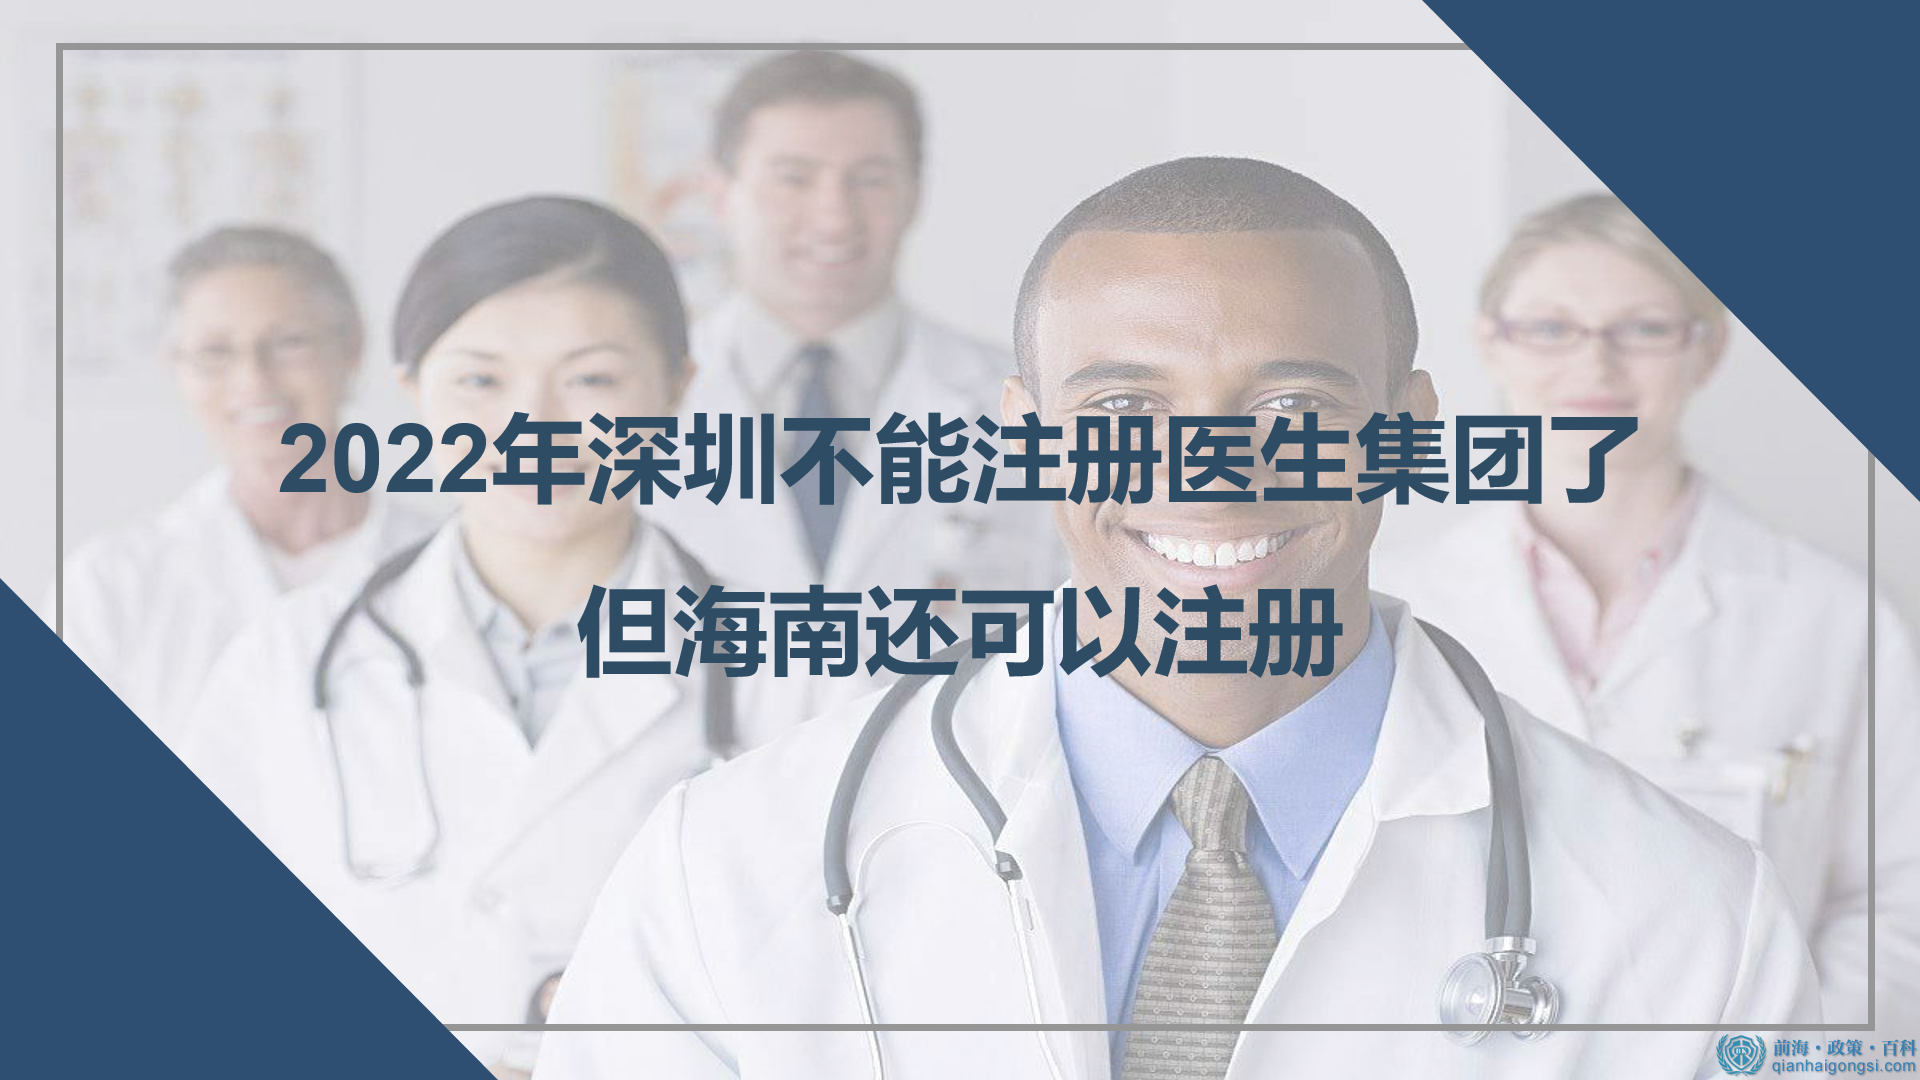 2022年深圳不能注册医生集团了，但海南还可以注册 